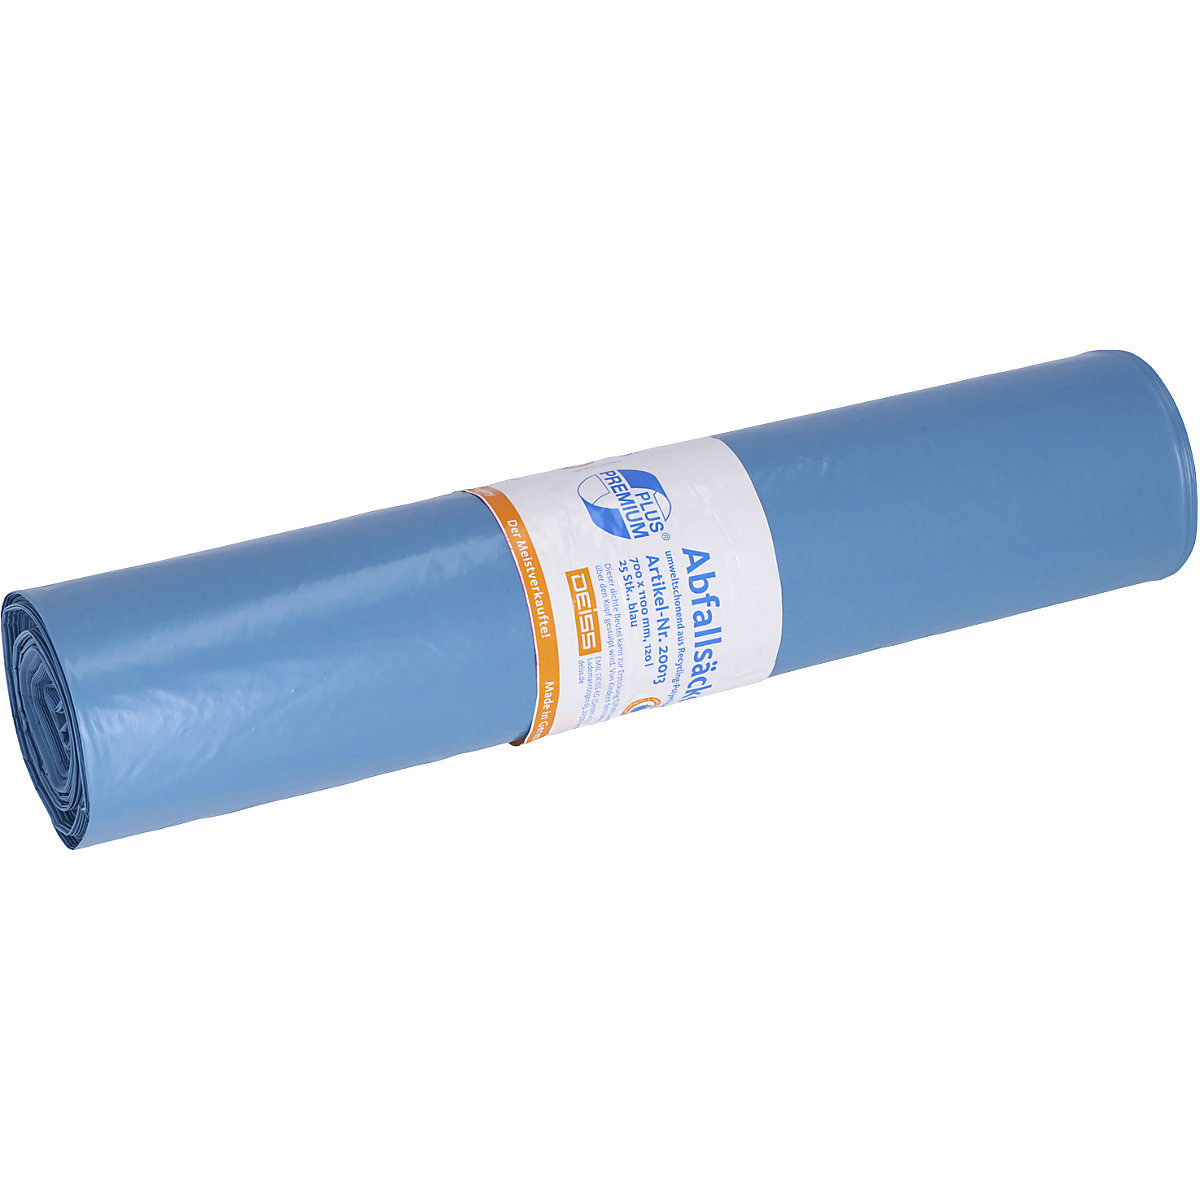 Sacs-poubelle PREMIUM PLUS, 120 l – Deiss, bleu, lot de 250, l x h 700 x 1100 mm, épaisseur matériau 34 µm